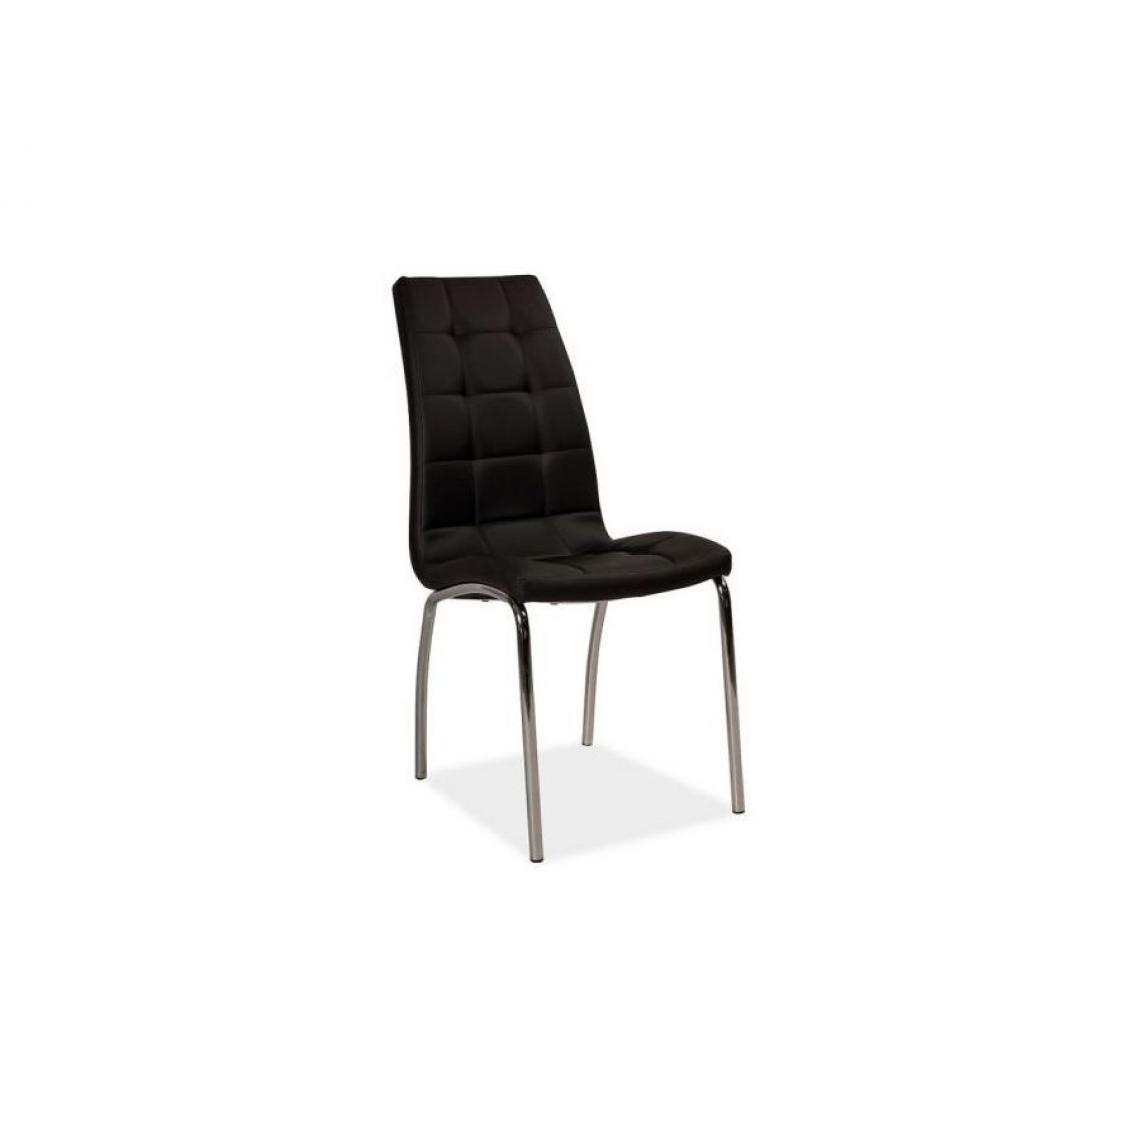 Hucoco - RYLIE | Chaise moderne salle à manger salon bureau | Dimensions : 96x43x43 cm | Rembourrage en cuir écologique | Base en métal - Noir - Chaises